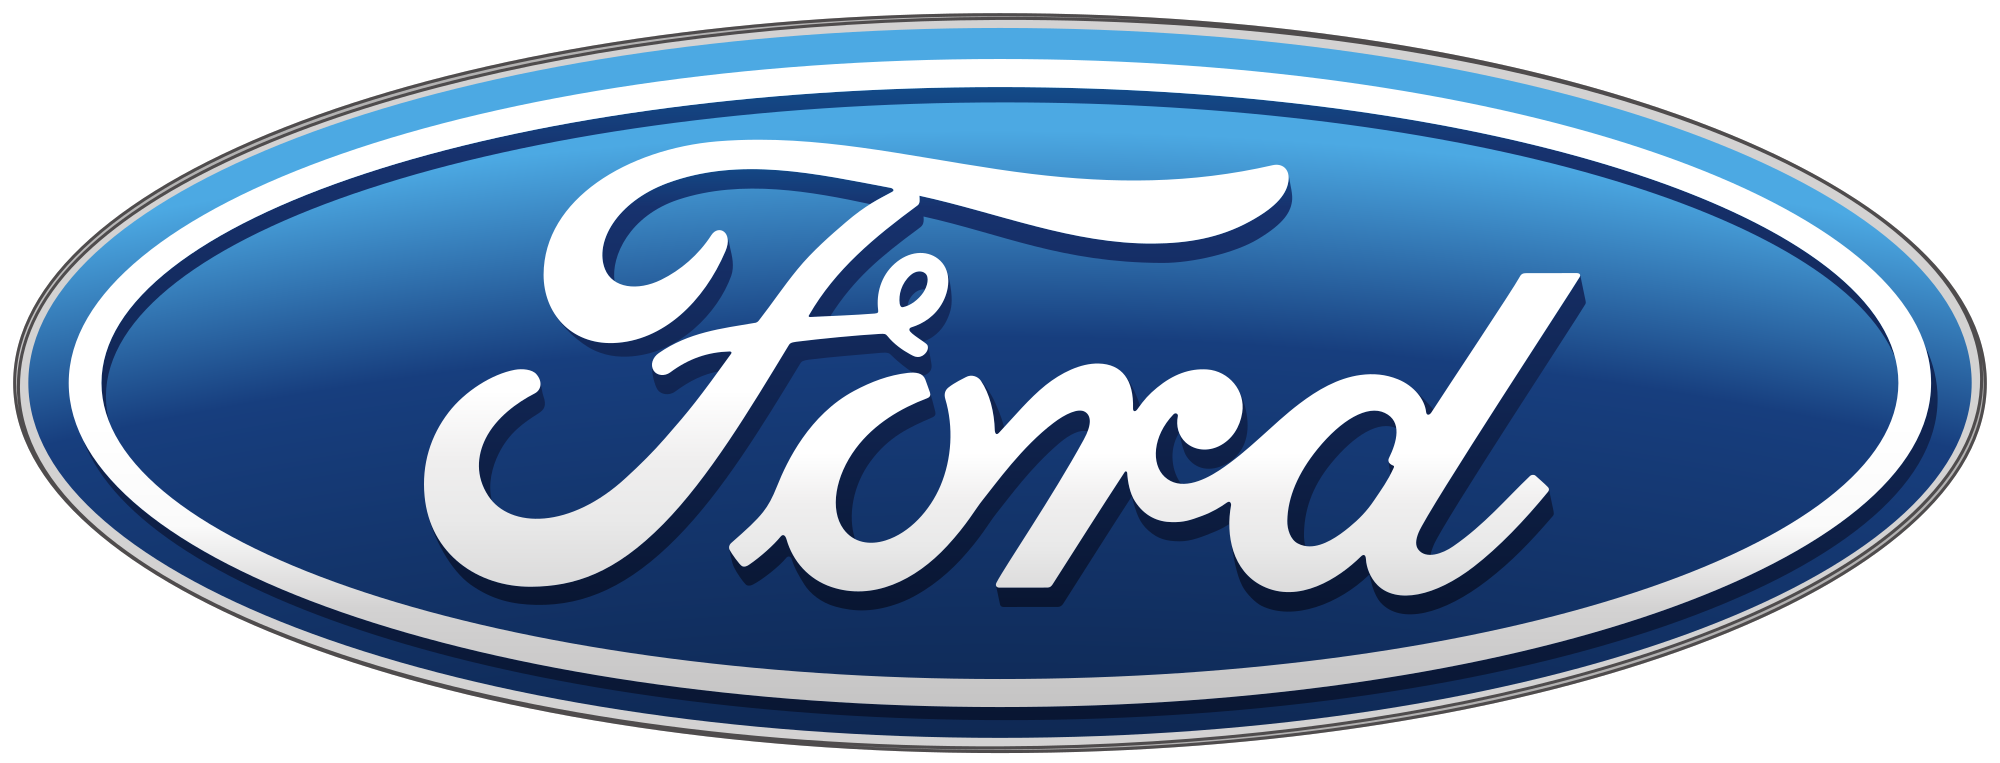 Logo for ford